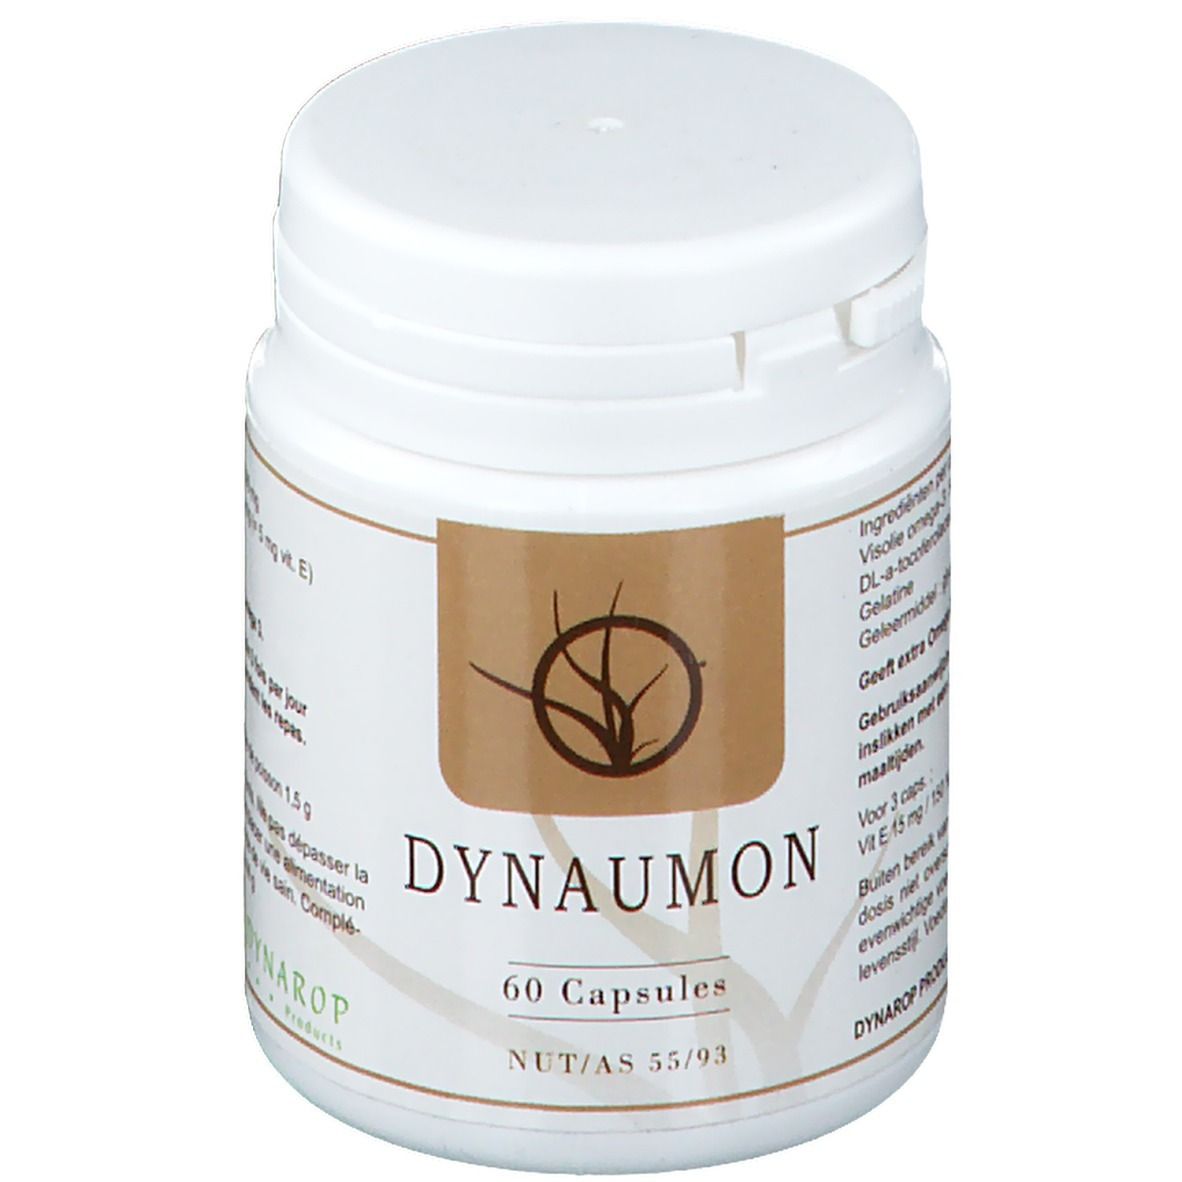 DYNAROP PRODUCTS Dynarop Dynaumon